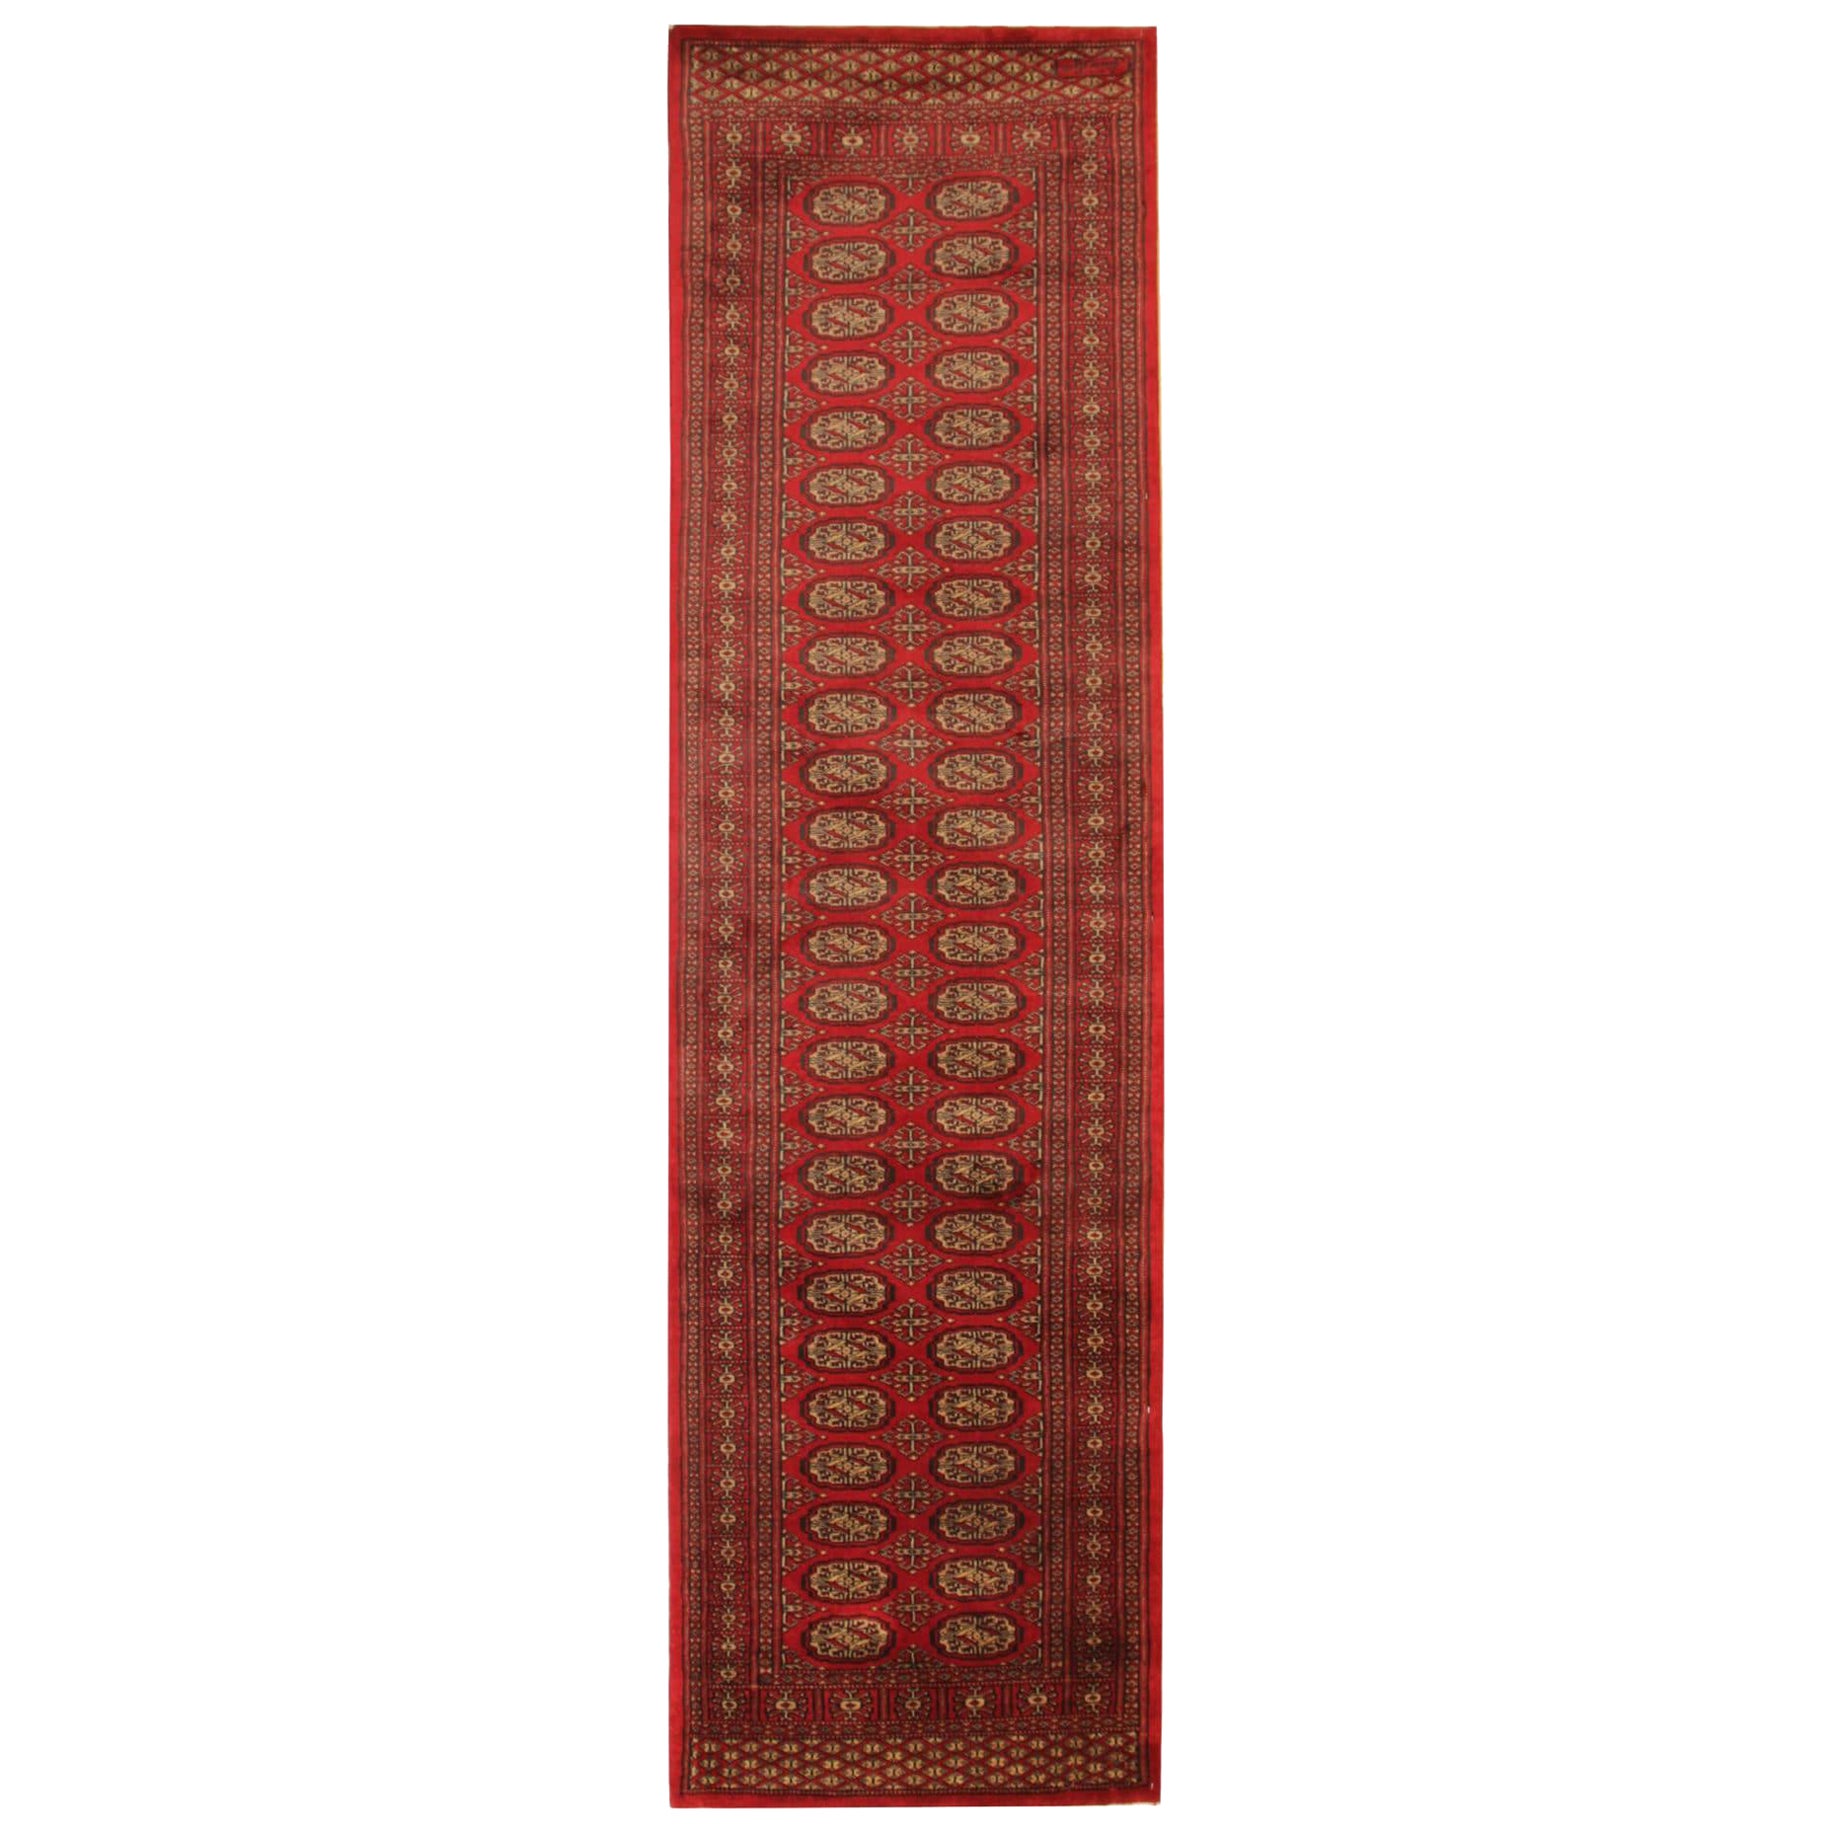 Red Runner Rug, Several Medallion Vintage Wool Turkmen Stair Runner